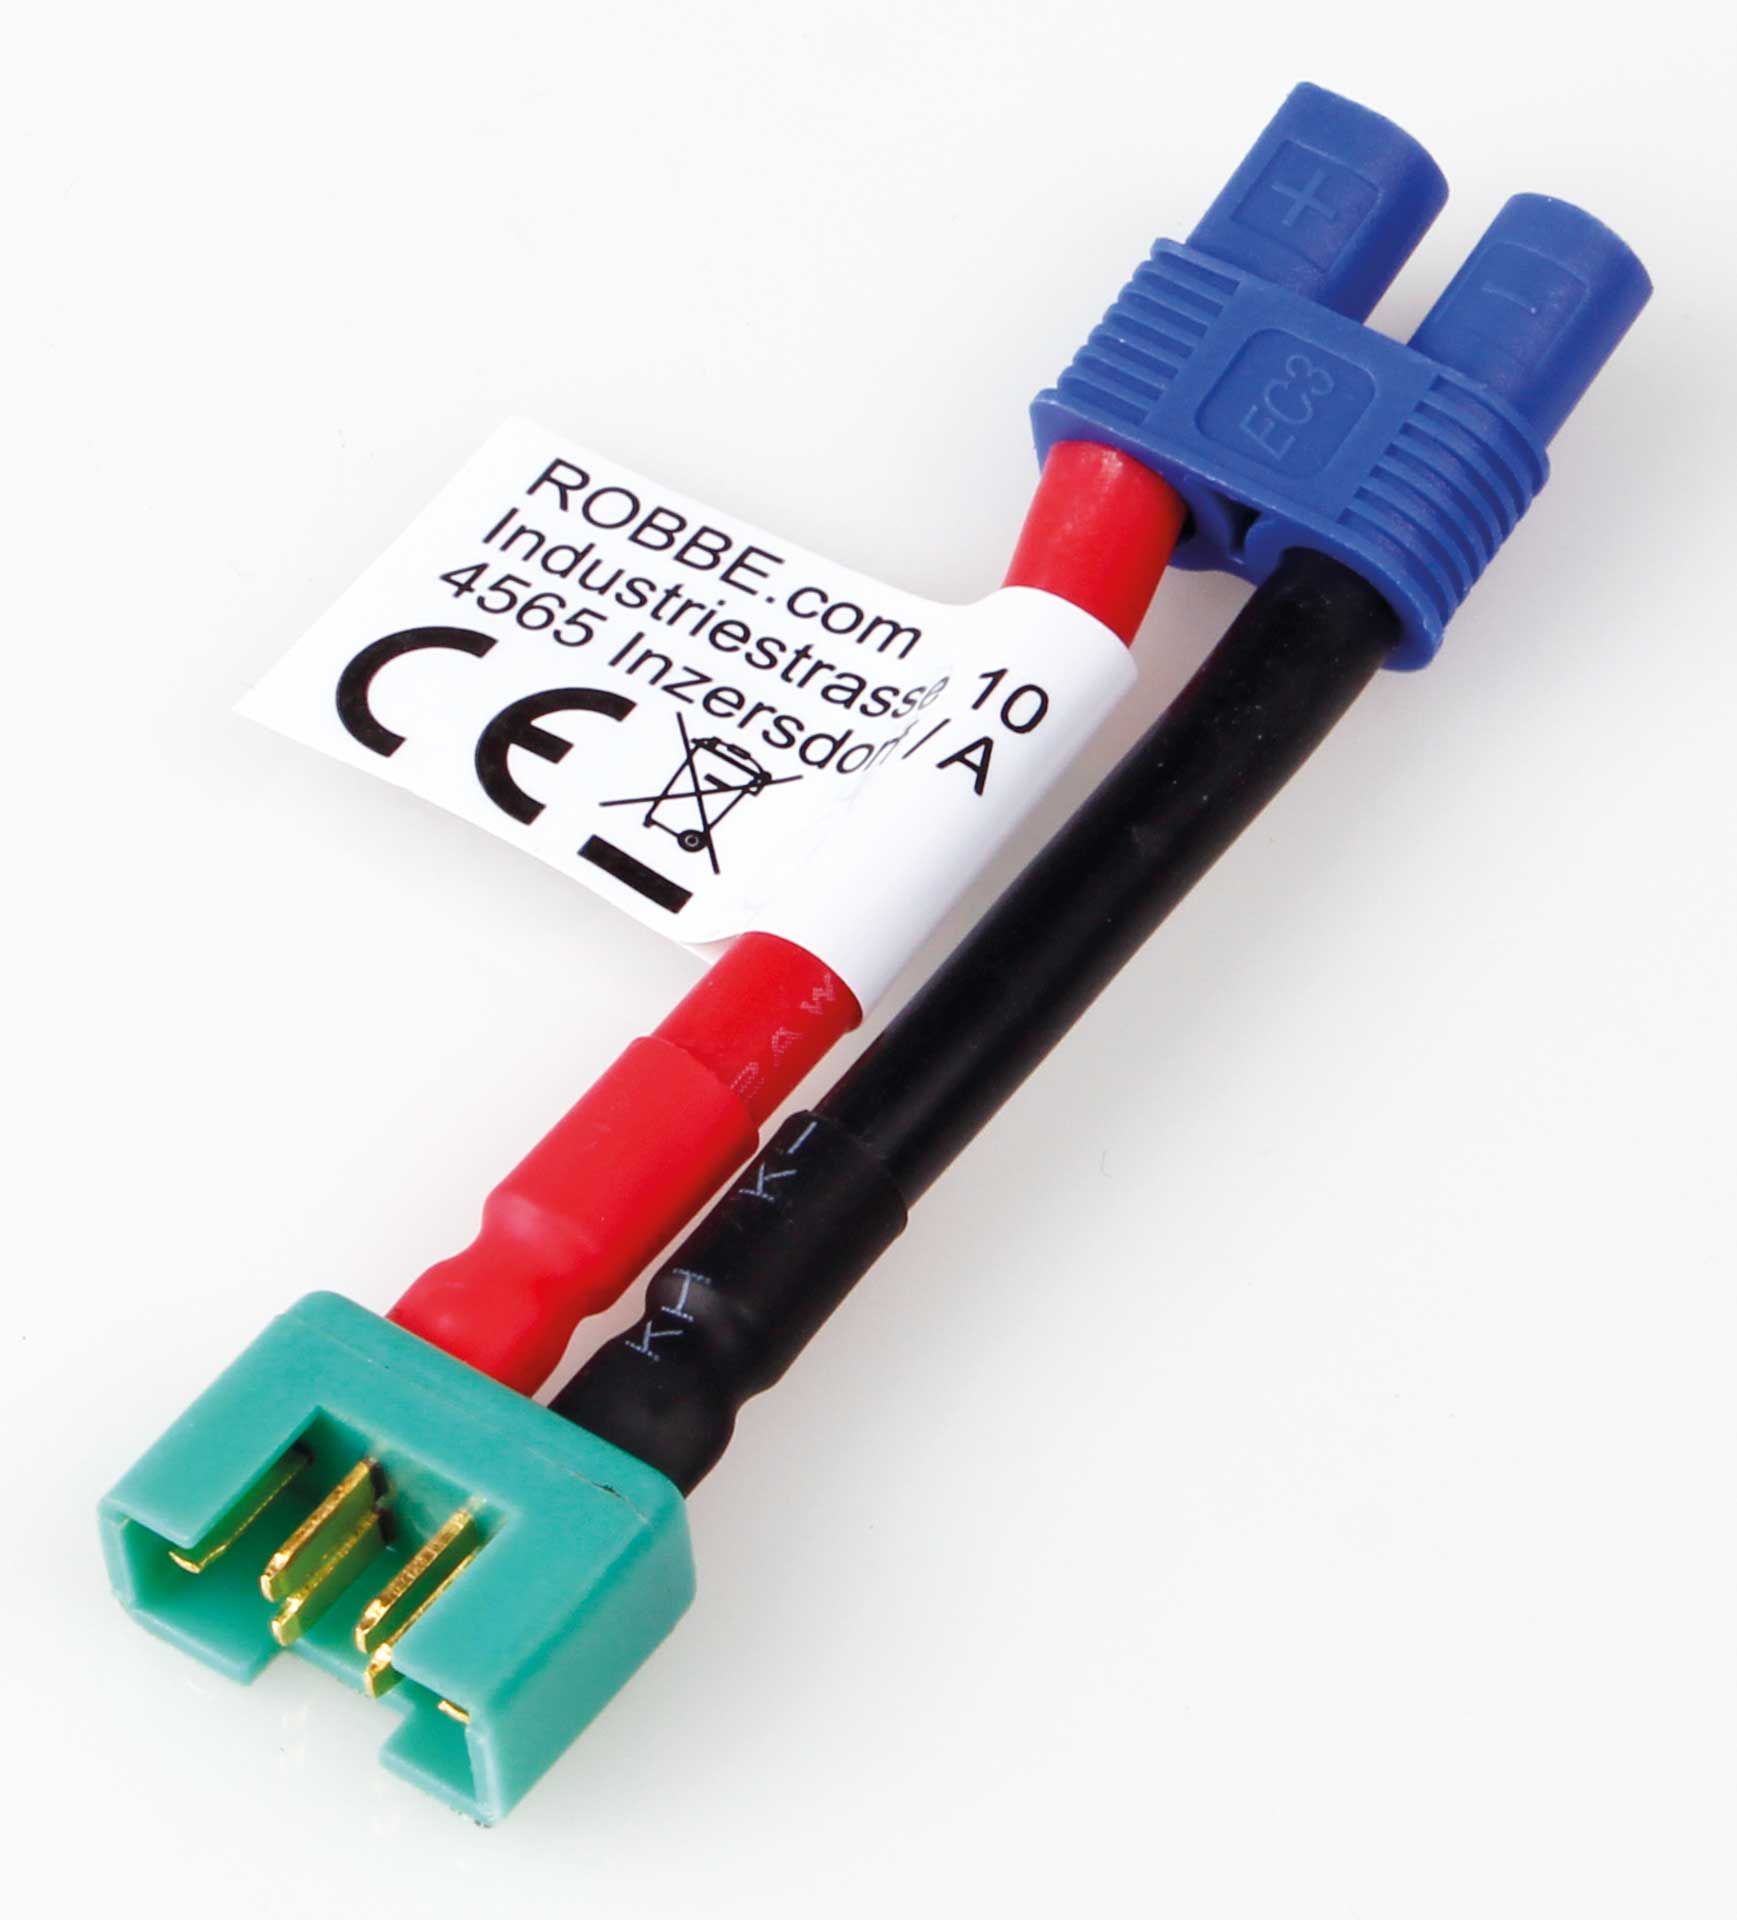 Robbe Modellsport Câble adaptateur  EC-3 Femelle  sur  MPX Male 30mm Longueur de câble  12AWG 1Pièce